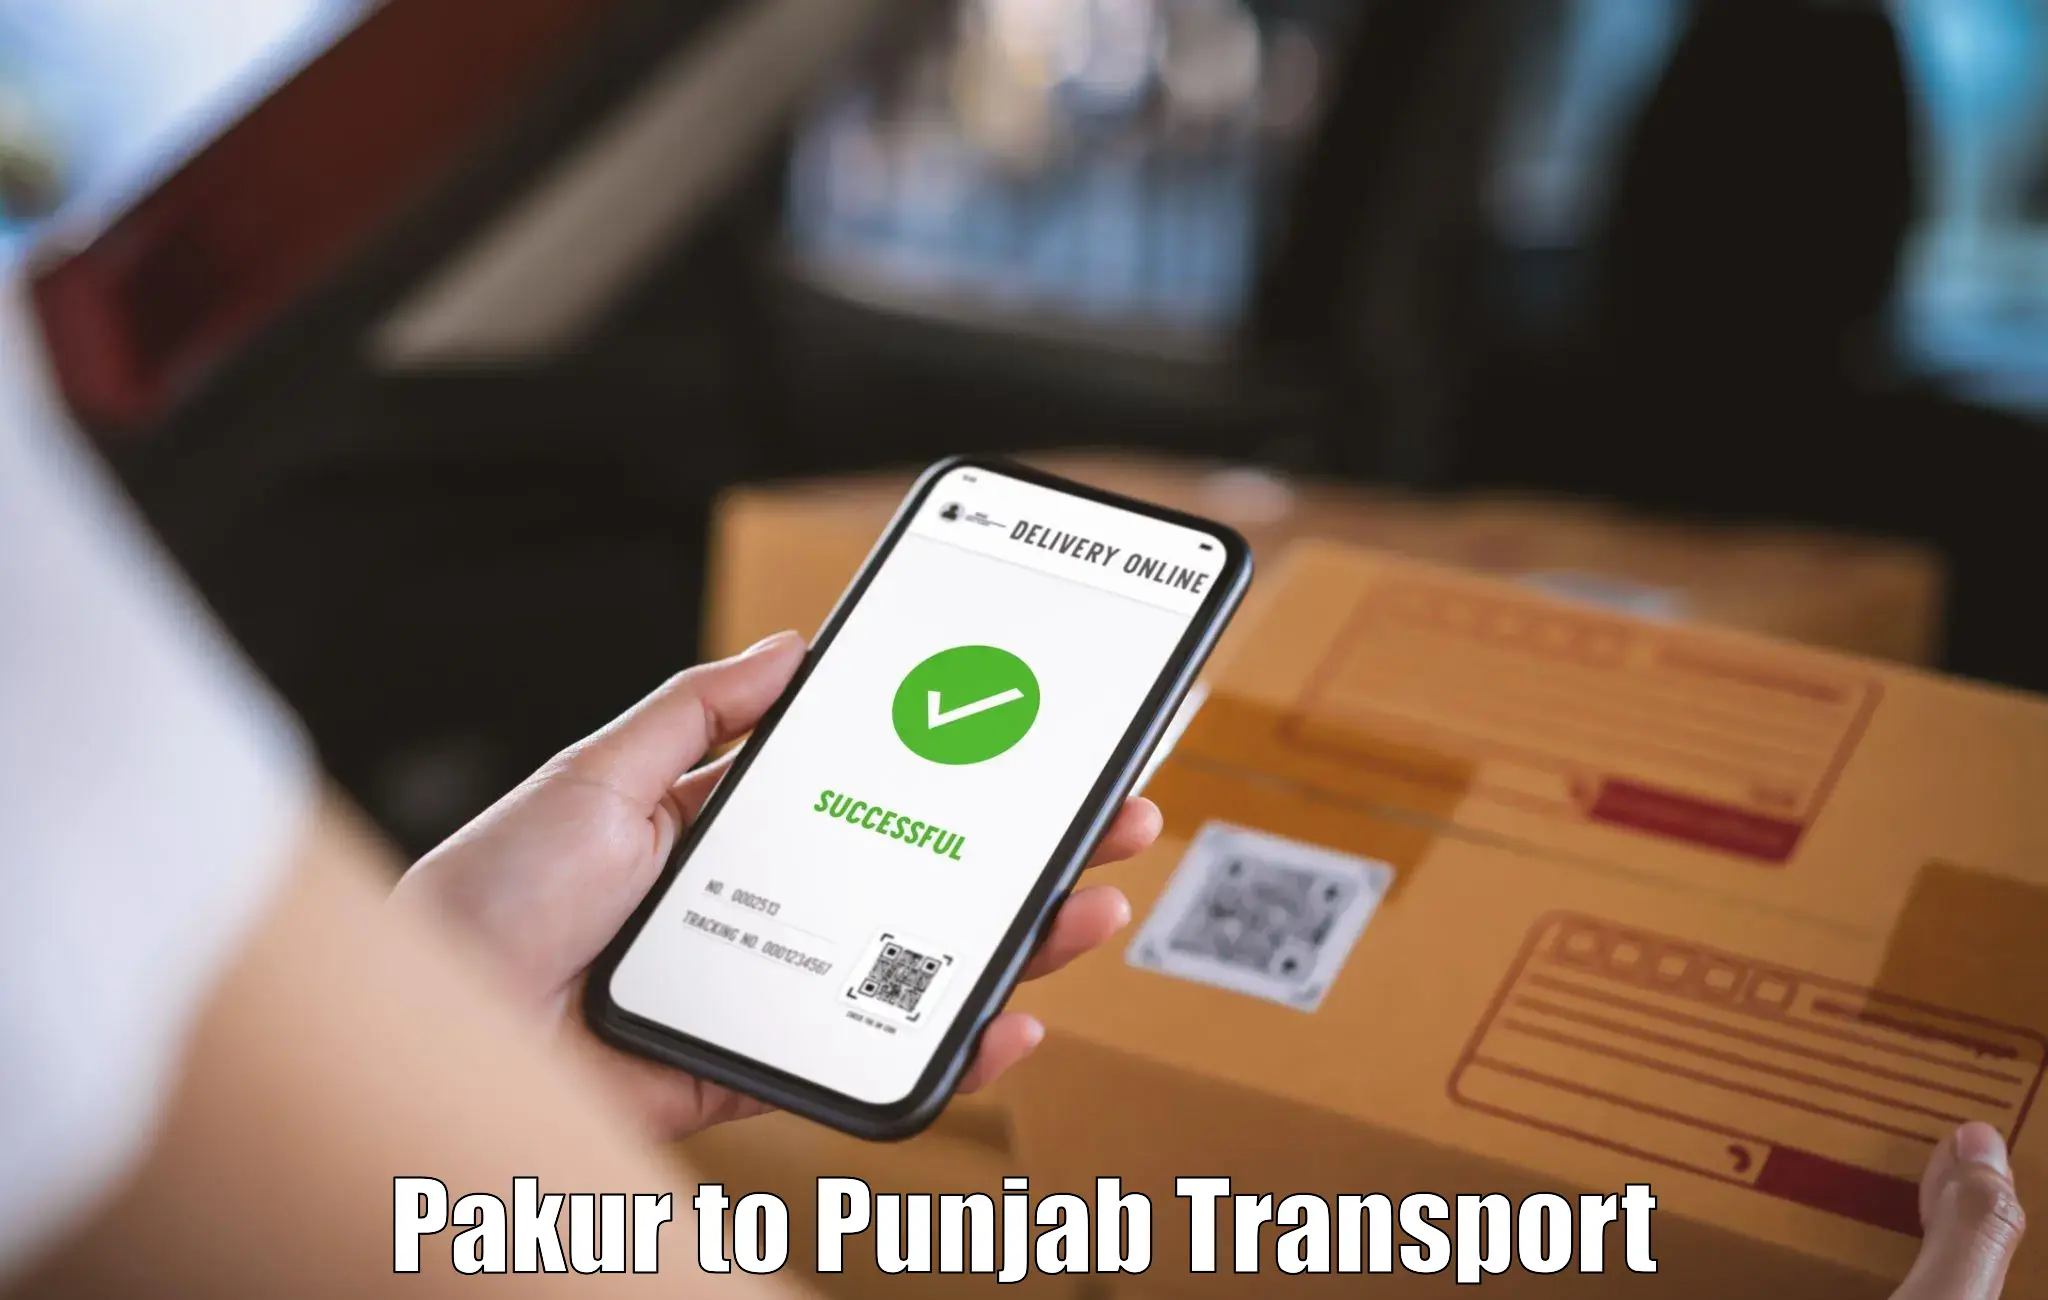 Online transport booking Pakur to Nangal